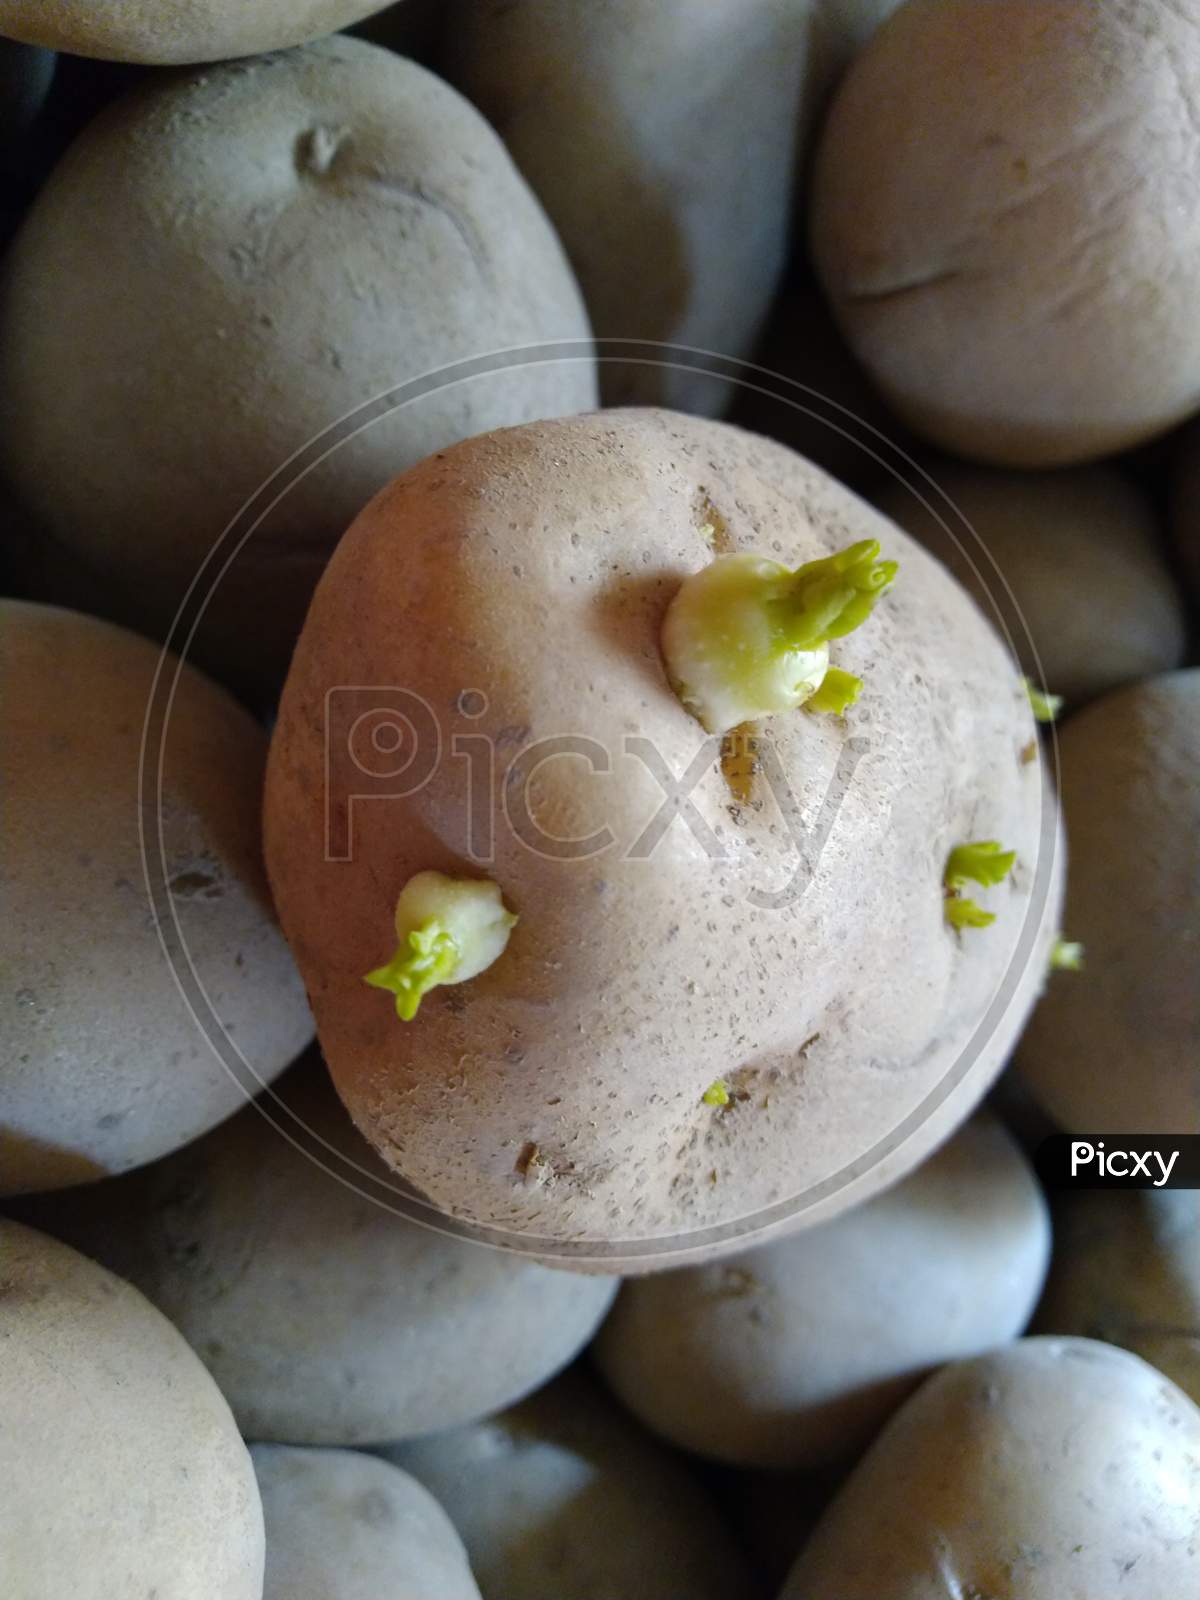 A close up view of fresh potato